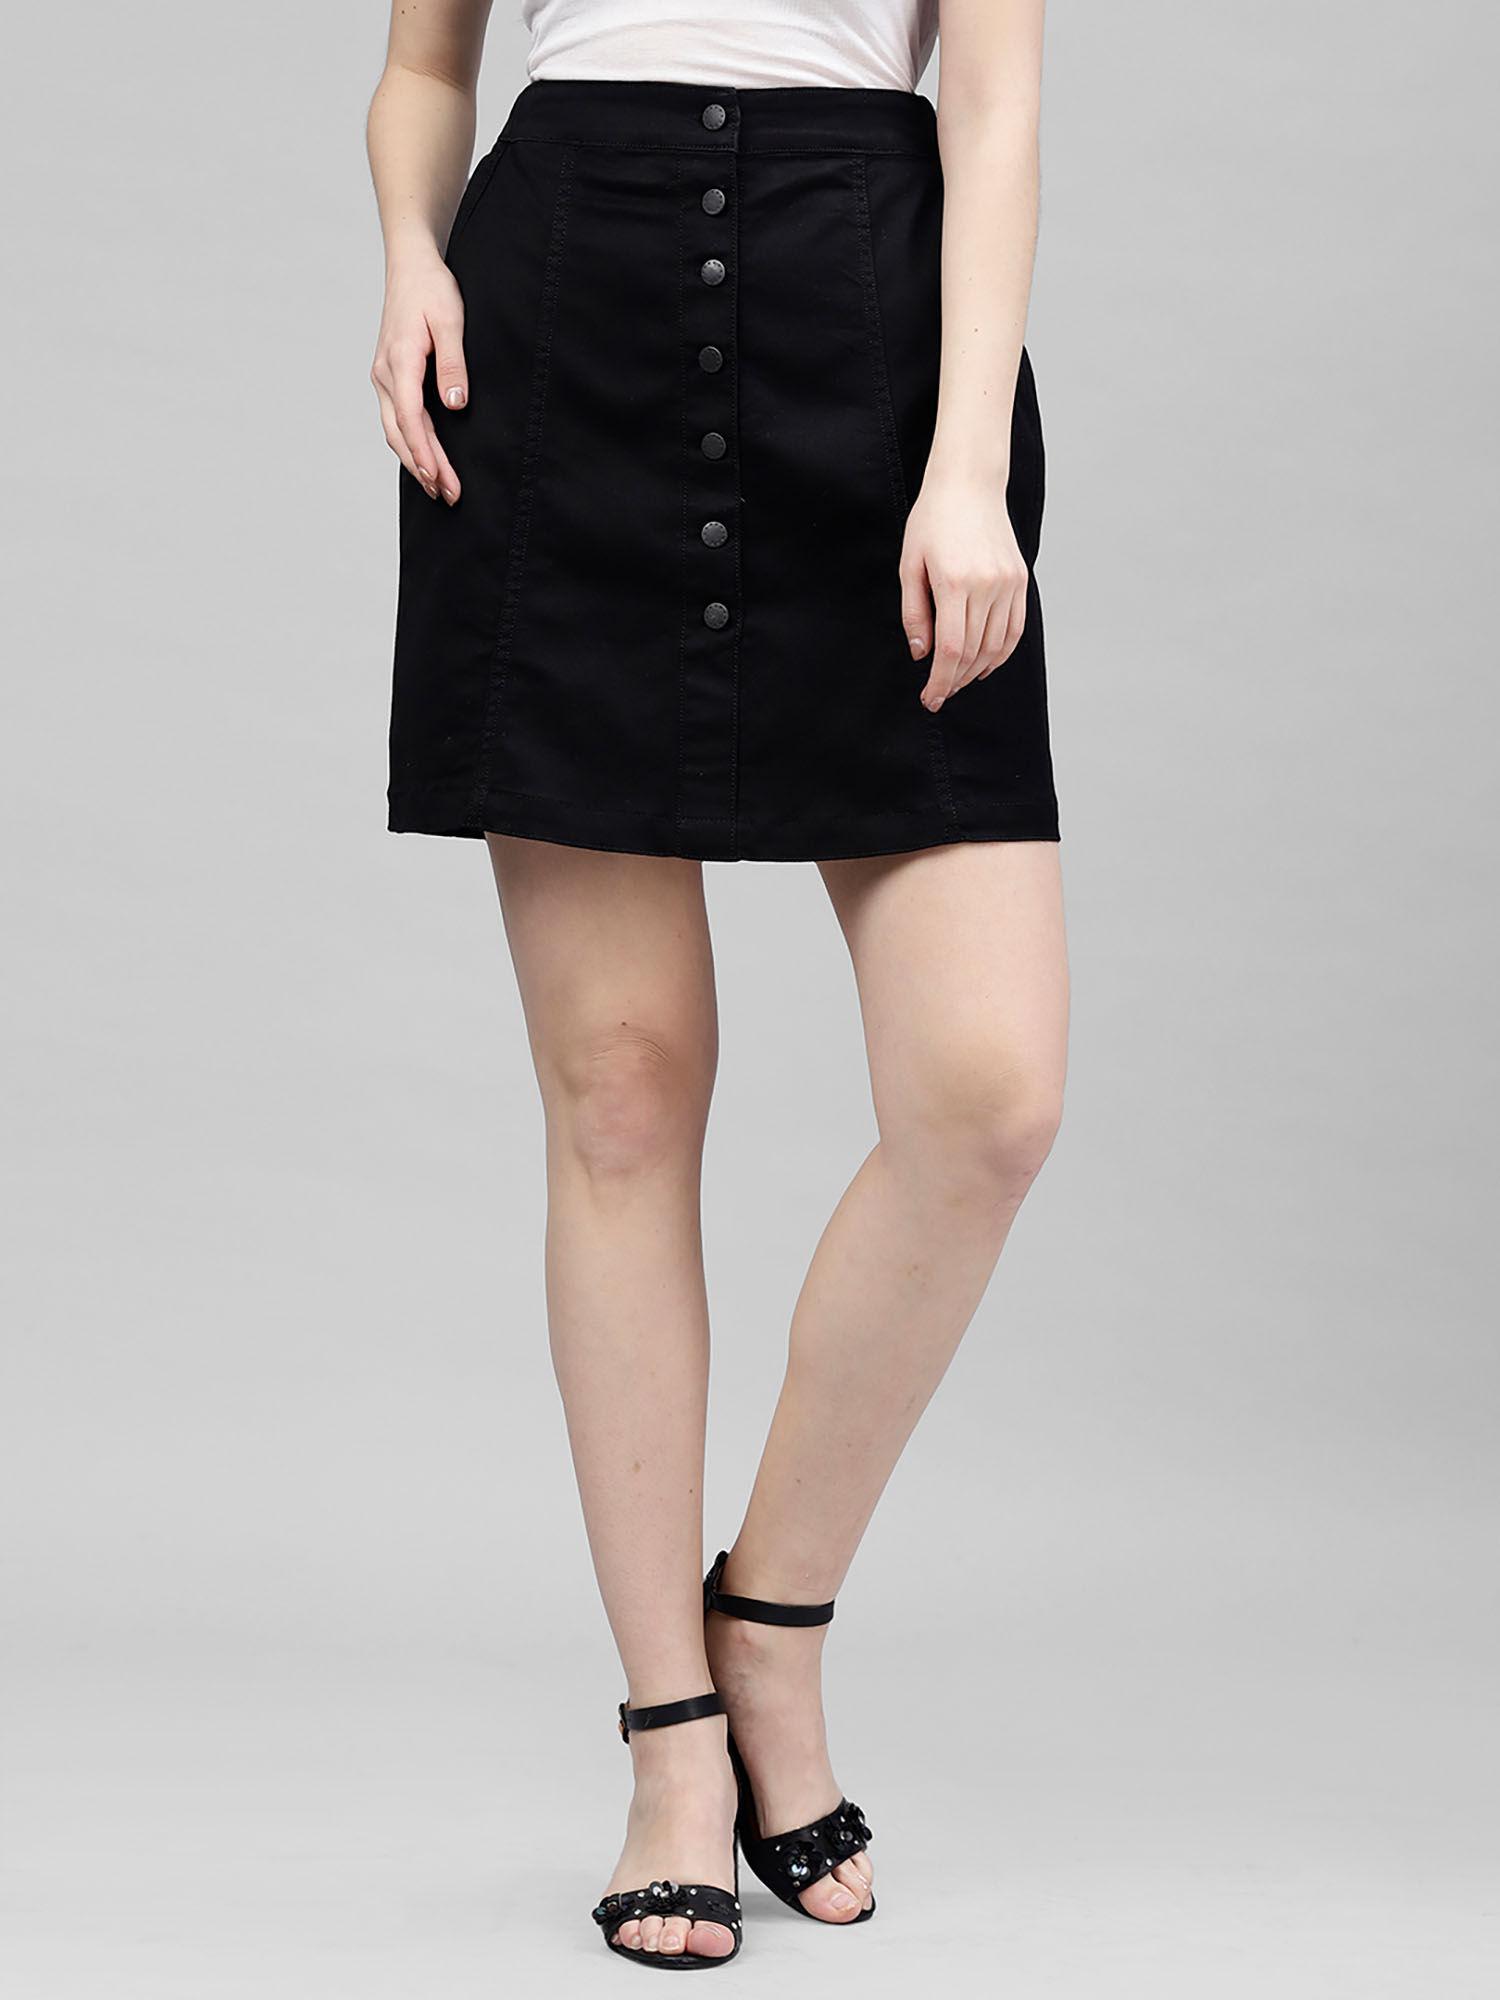 black denim mini skirt